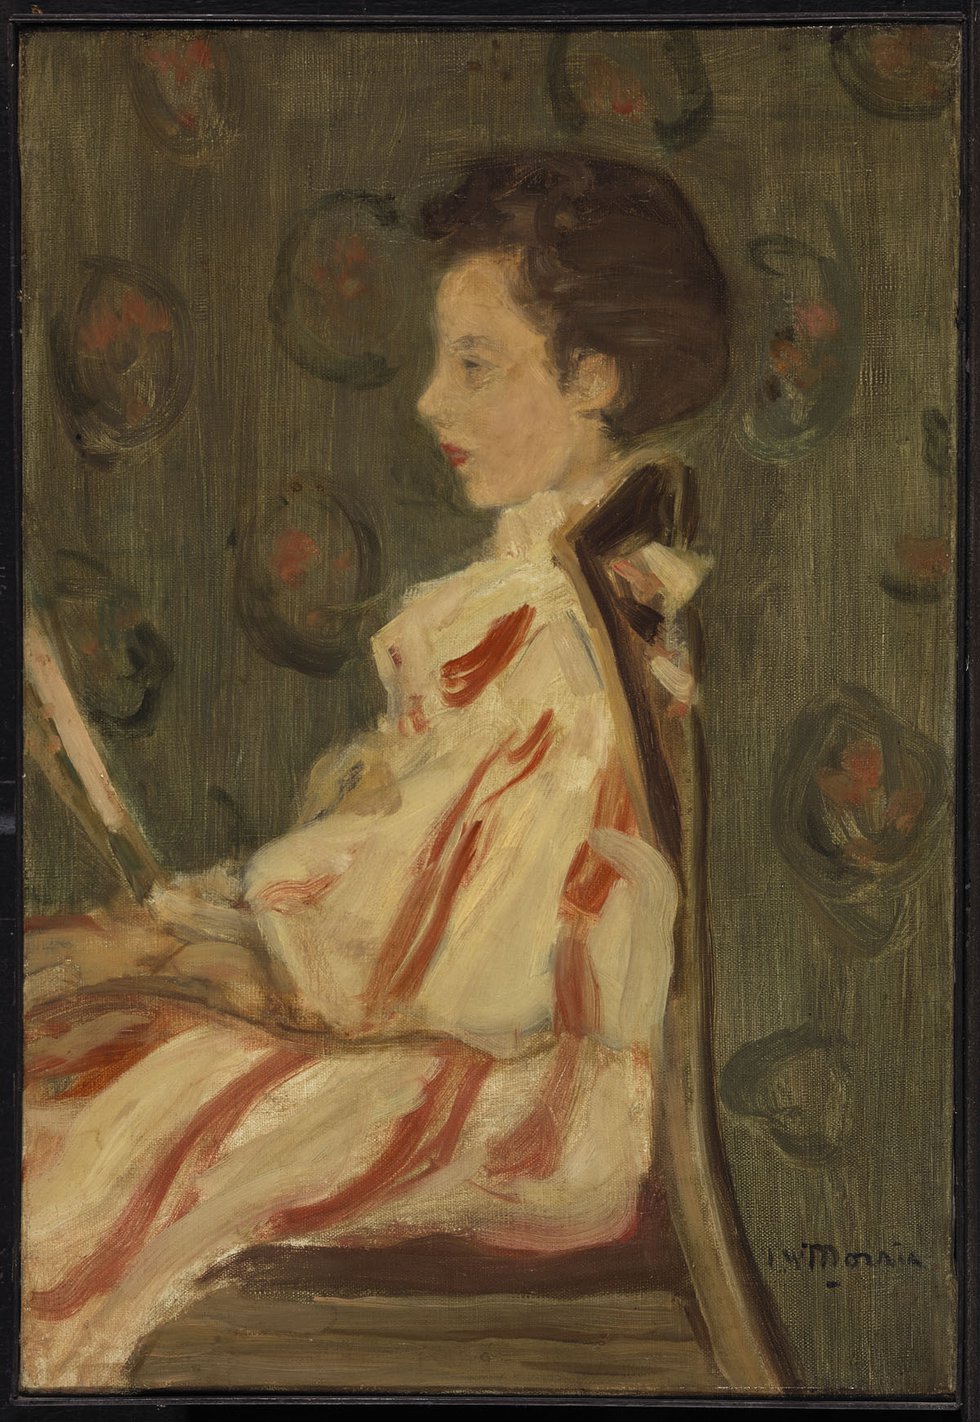 James Wilson Morrice, "Woman in a Chair," circa 1900-1905